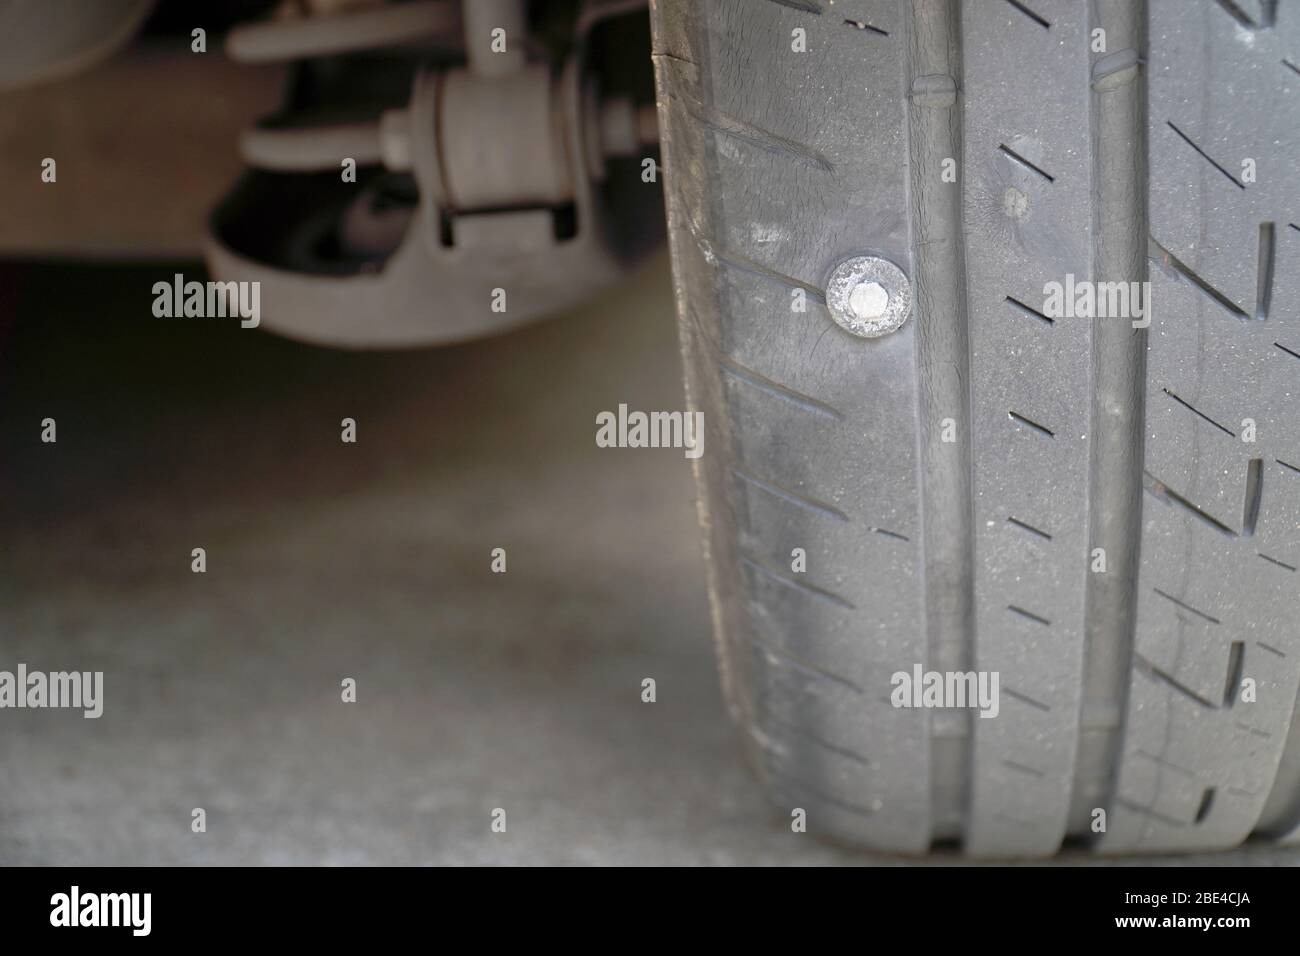 Primo piano dello pneumatico dove la vite è bloccata, causando la perdita dello pneumatico, la maggior parte dei problemi che causano lo sgonfio degli pneumatici. Foto Stock